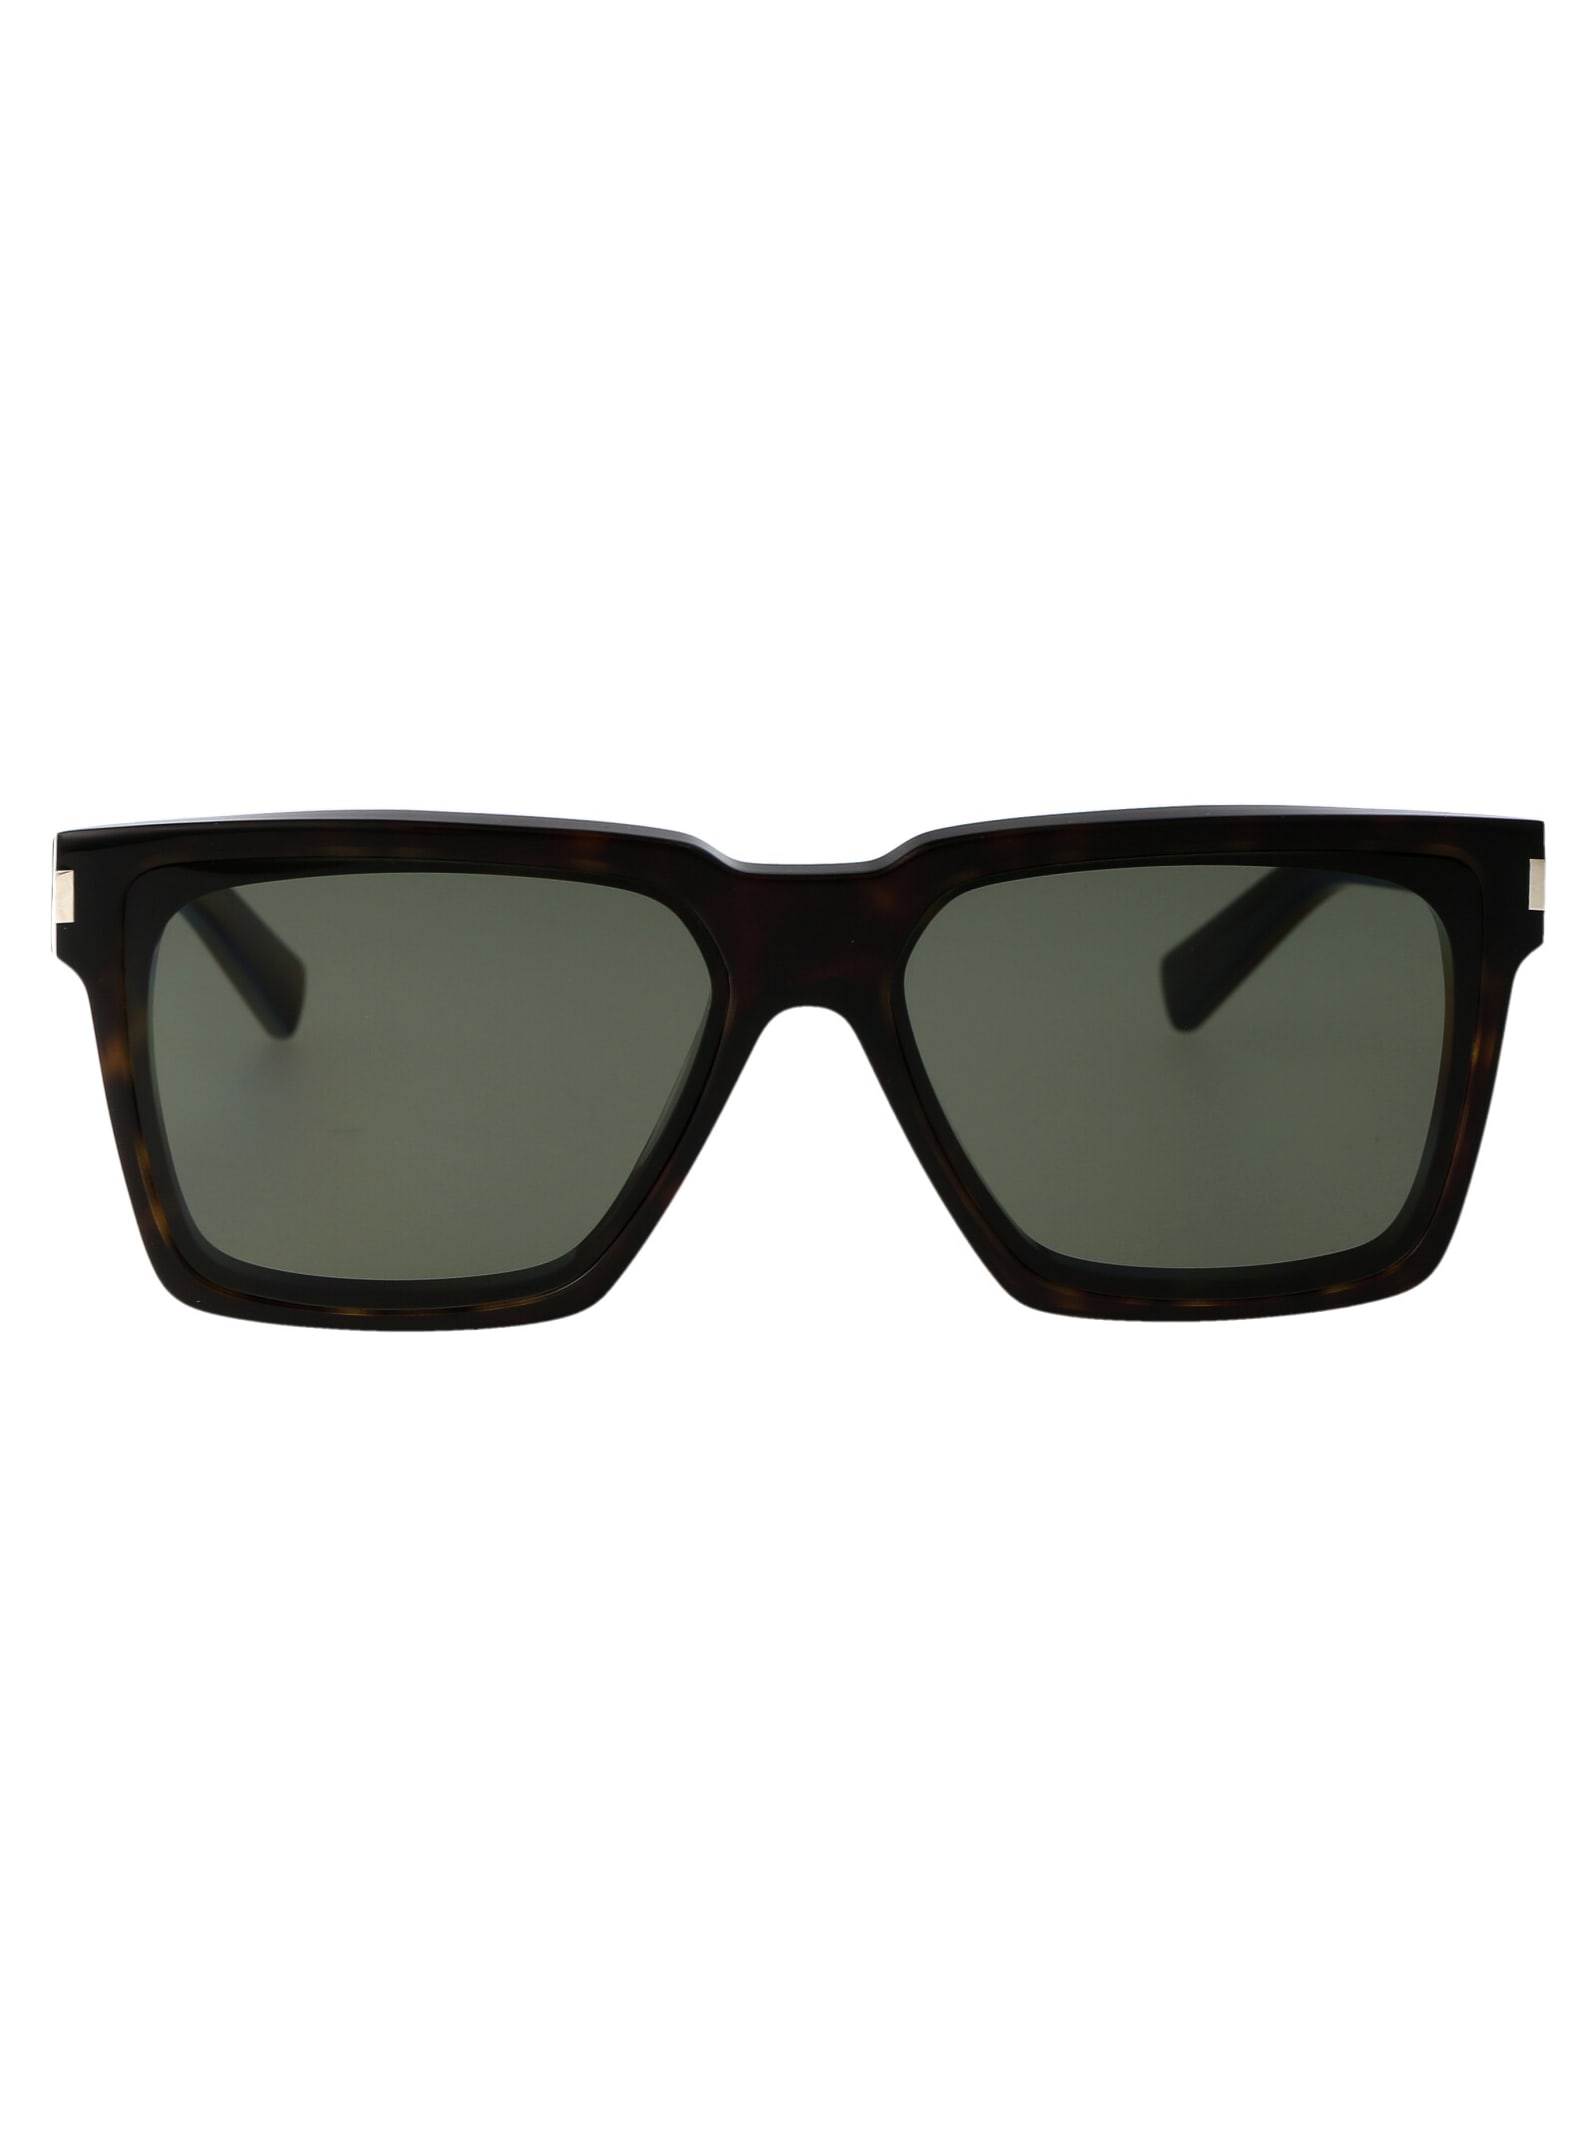 Saint Laurent Sl 610 Sunglasses In 002 Havana Havana Grey